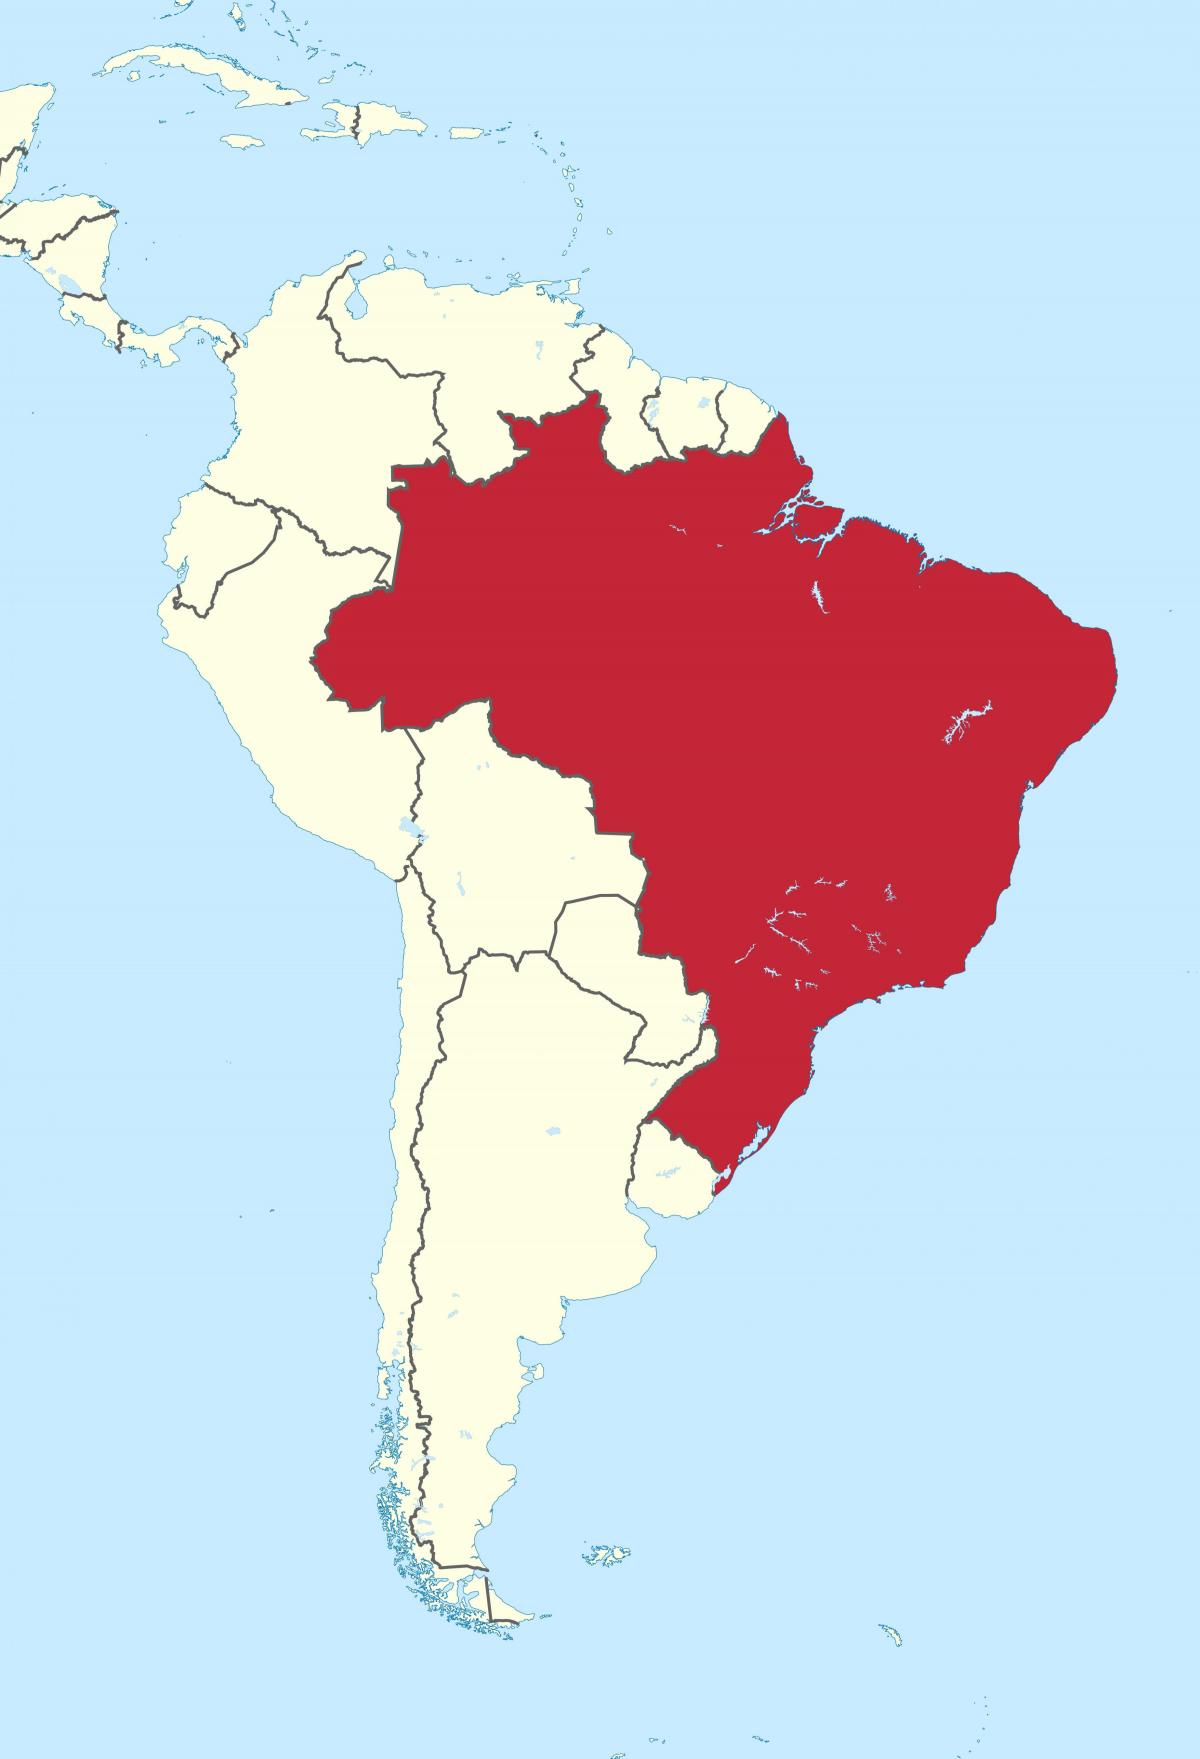 A localização do Brasil no mapa das Américas